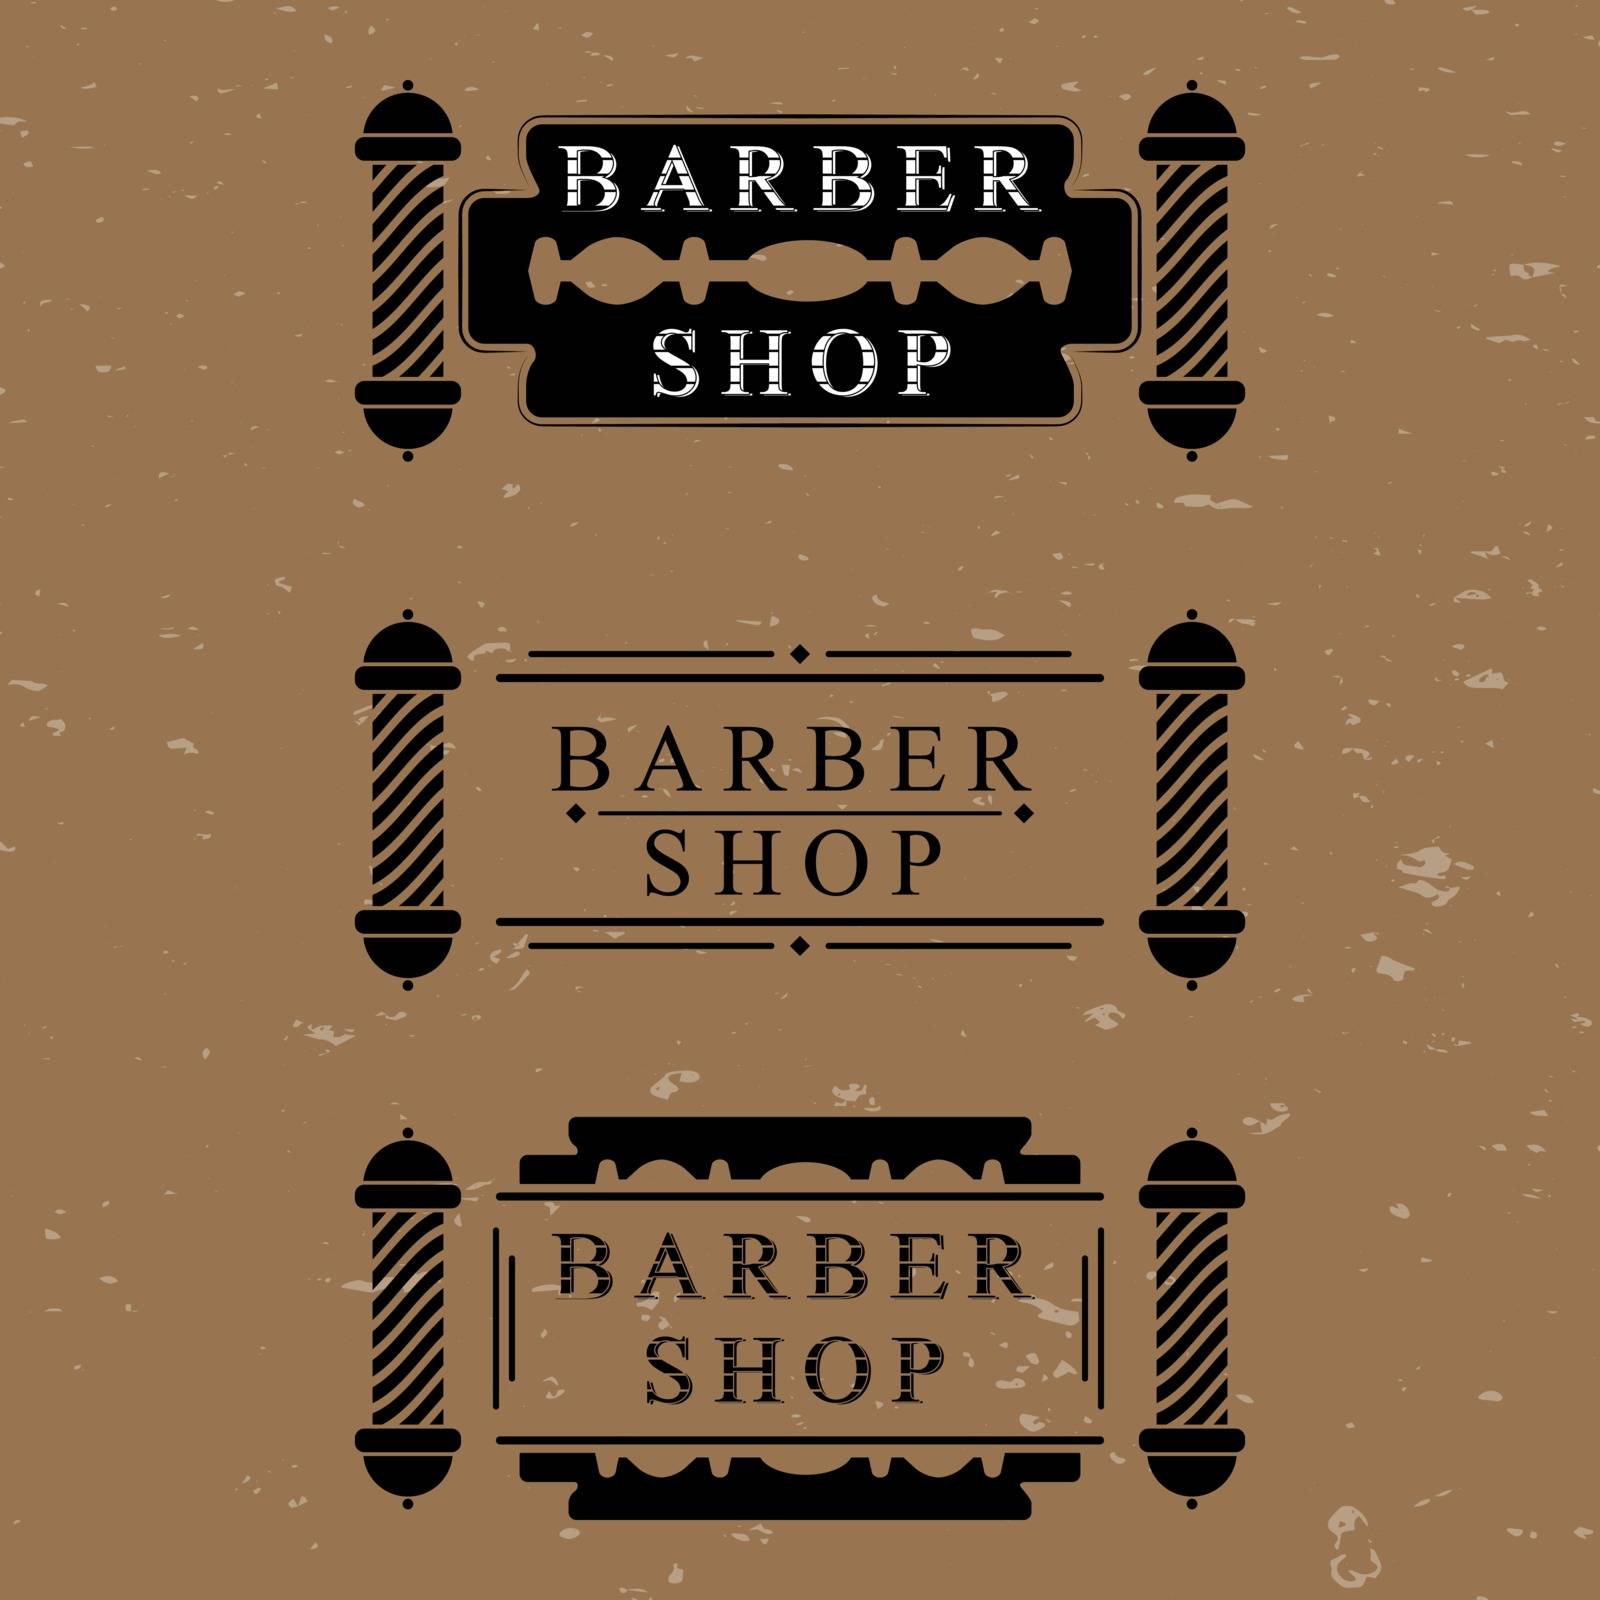 The vector set for barber shop design